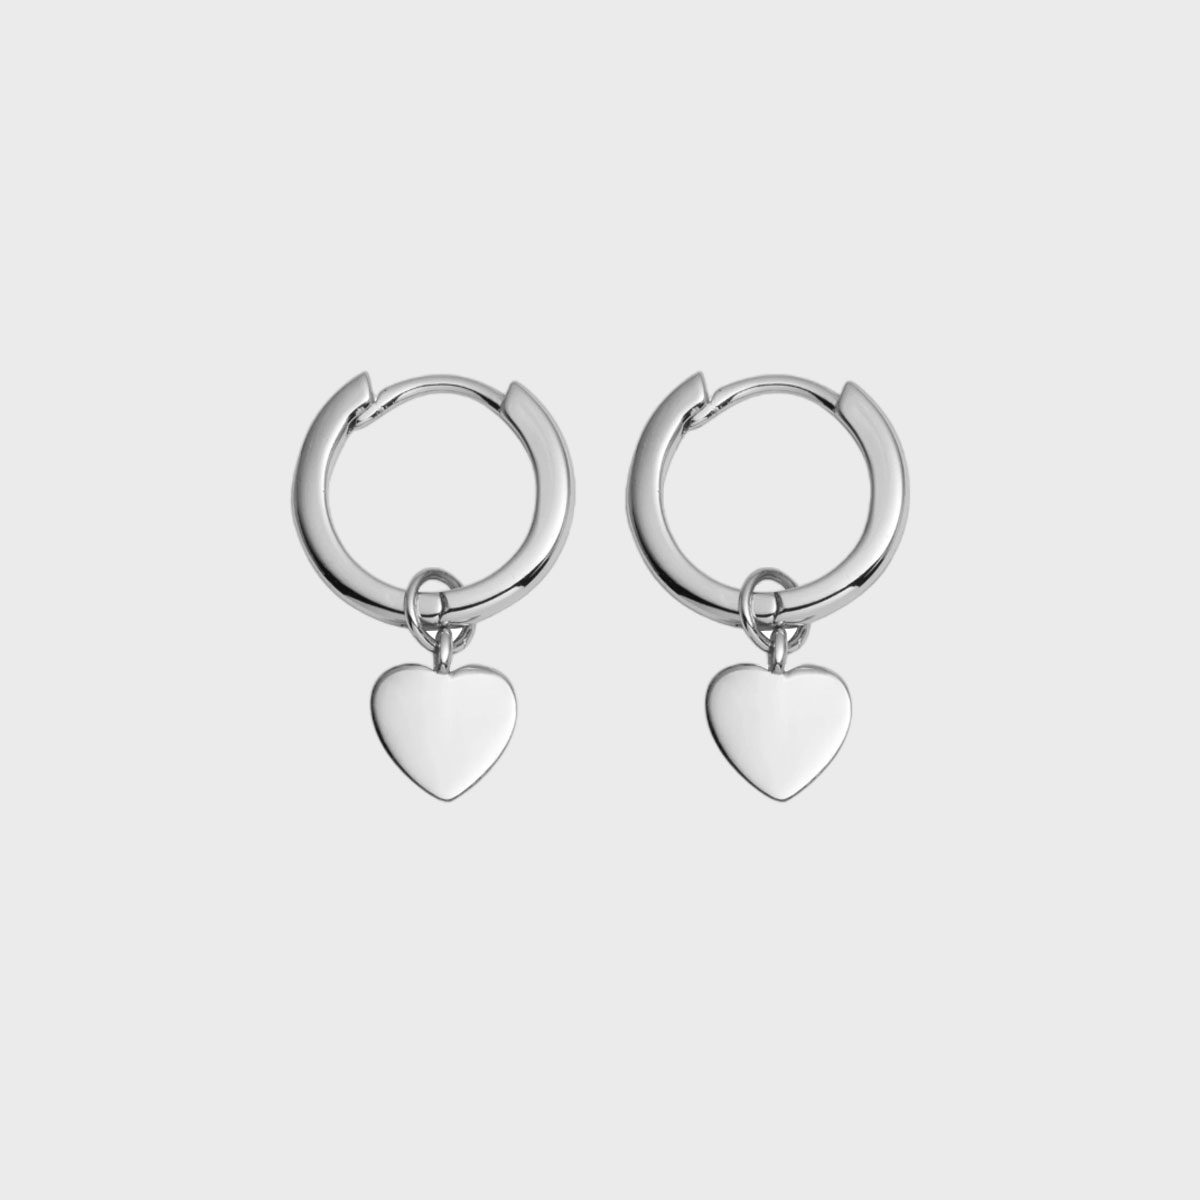 Sterling Silver Heart Pendant Earrings (silver)